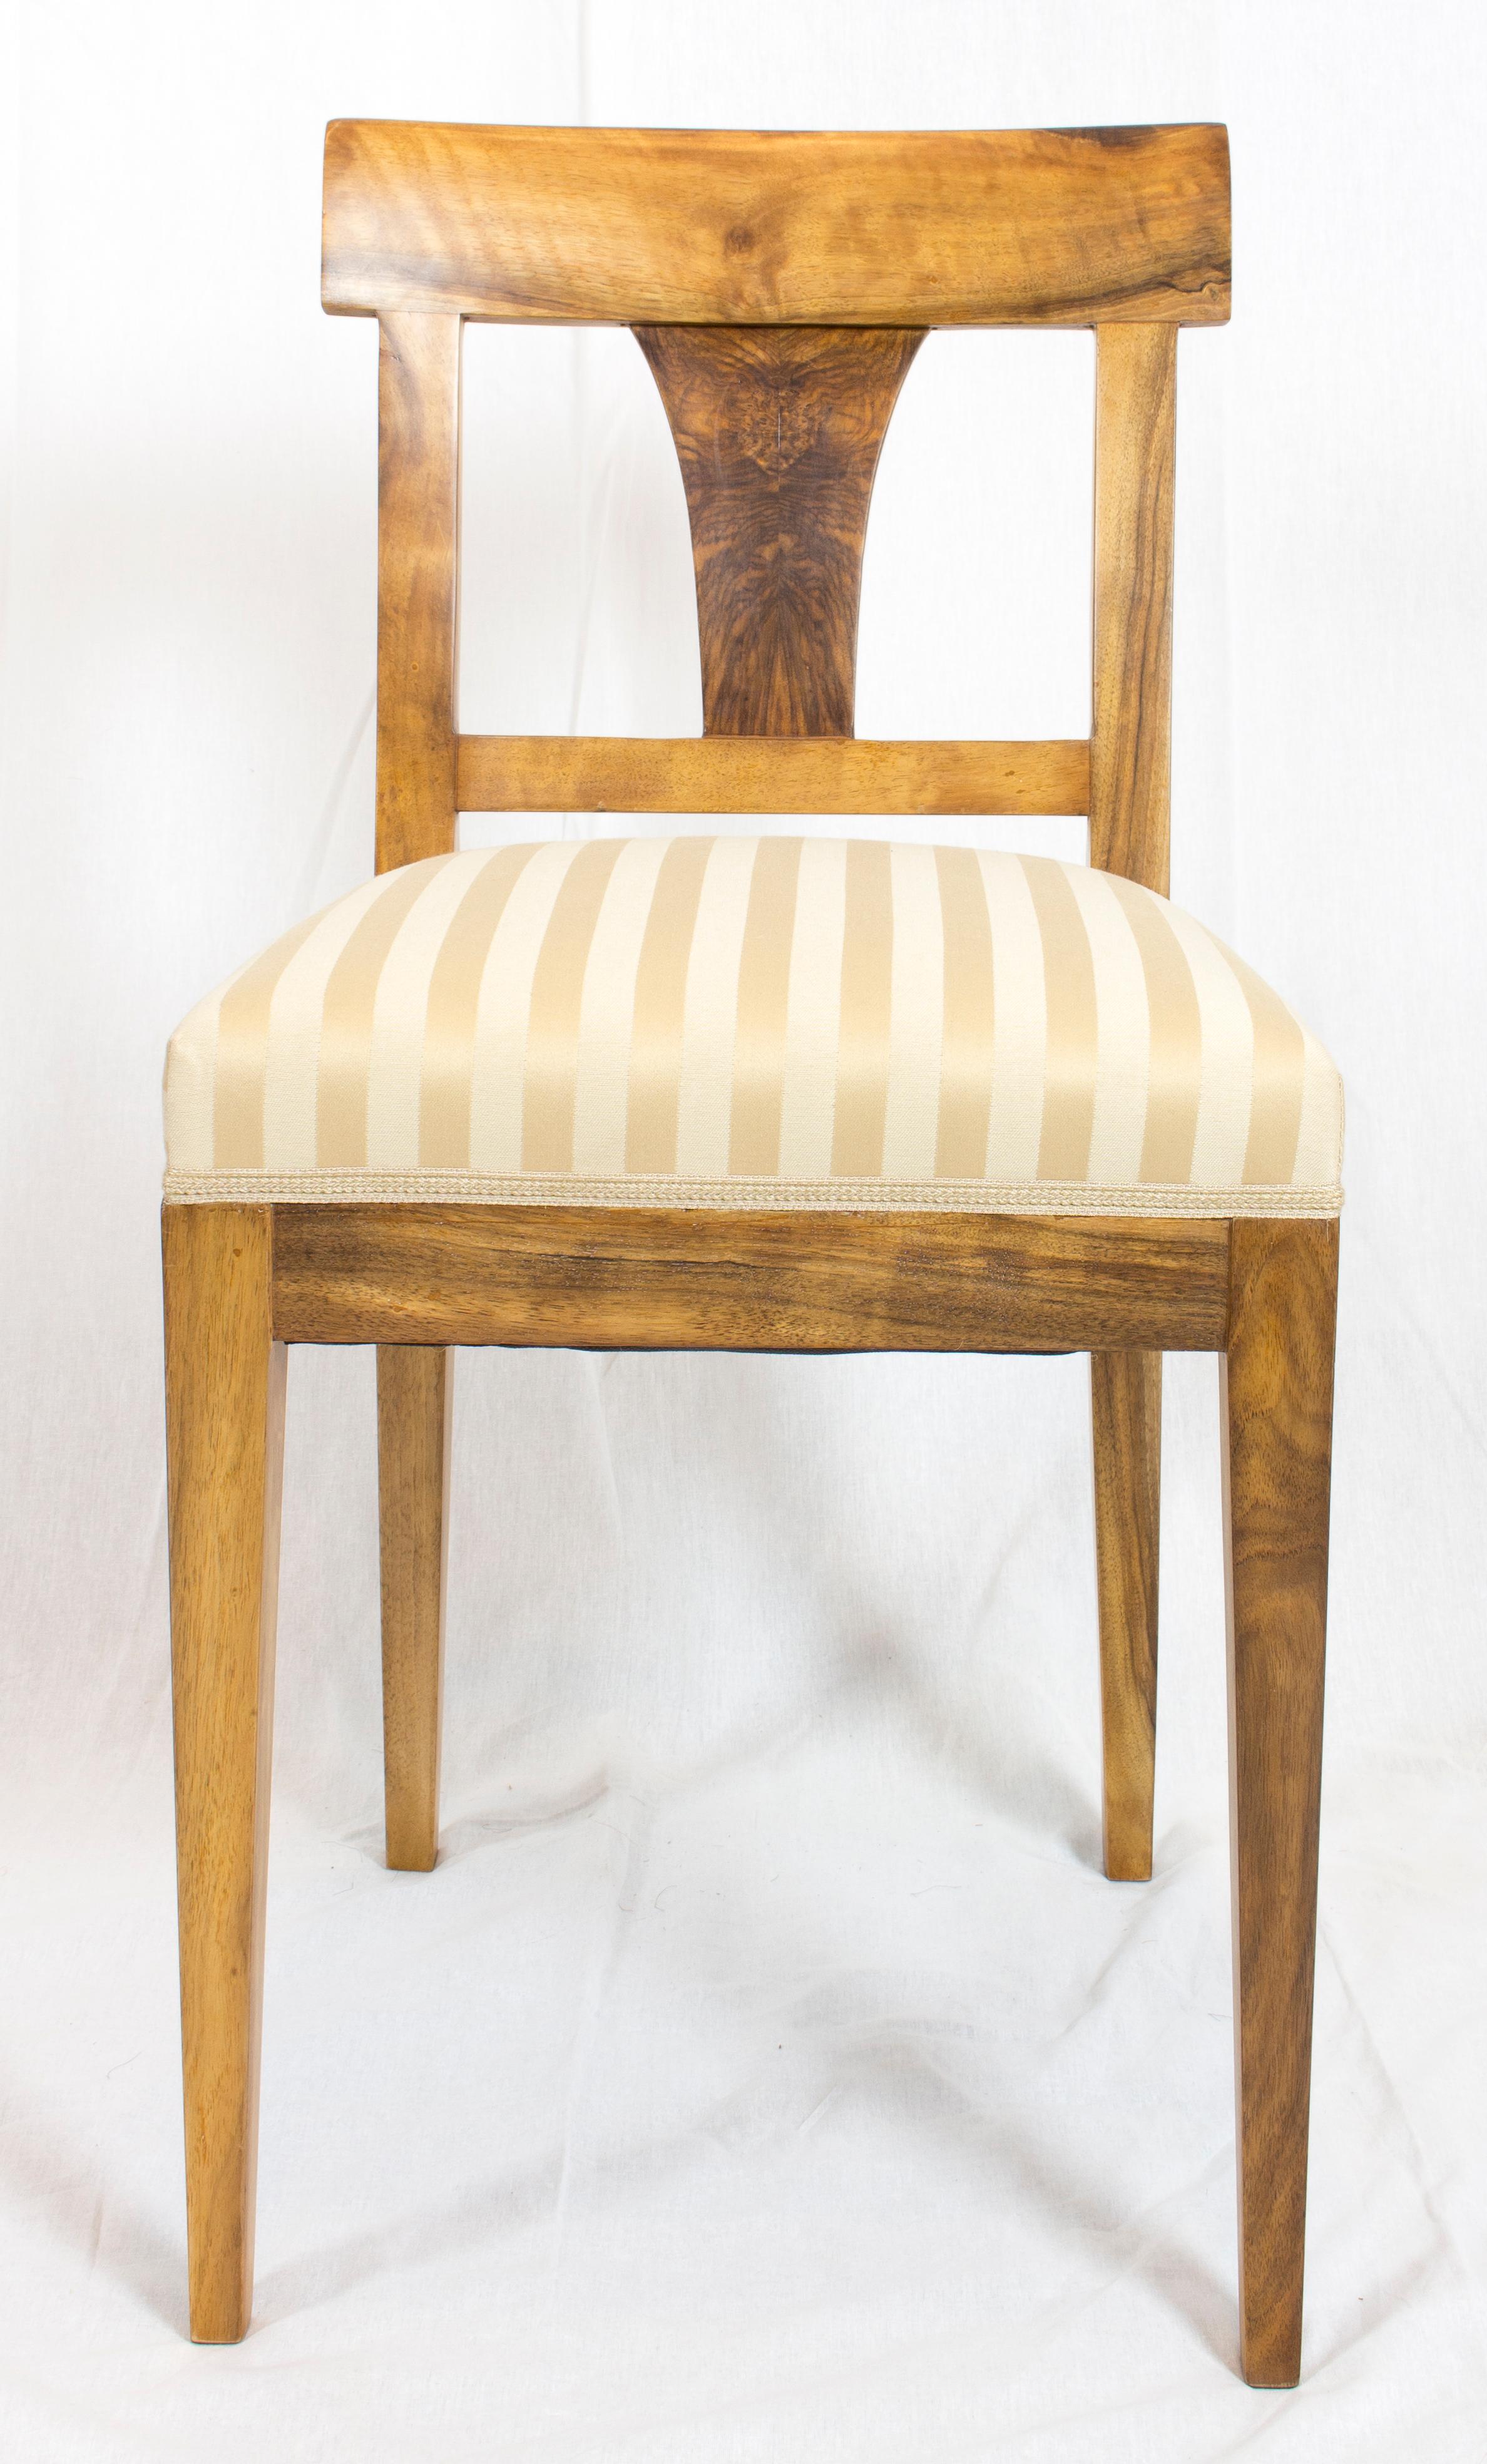 Ein Stuhl aus der Zeit des Biedermeier, um 1830. Der Stuhl ist aus massivem Nussbaumholz gefertigt. Der Stuhl ist neu gepolstert.
In sehr gutem restauriertem Zustand. Die Oberfläche ist halbglänzend und sehr glatt.